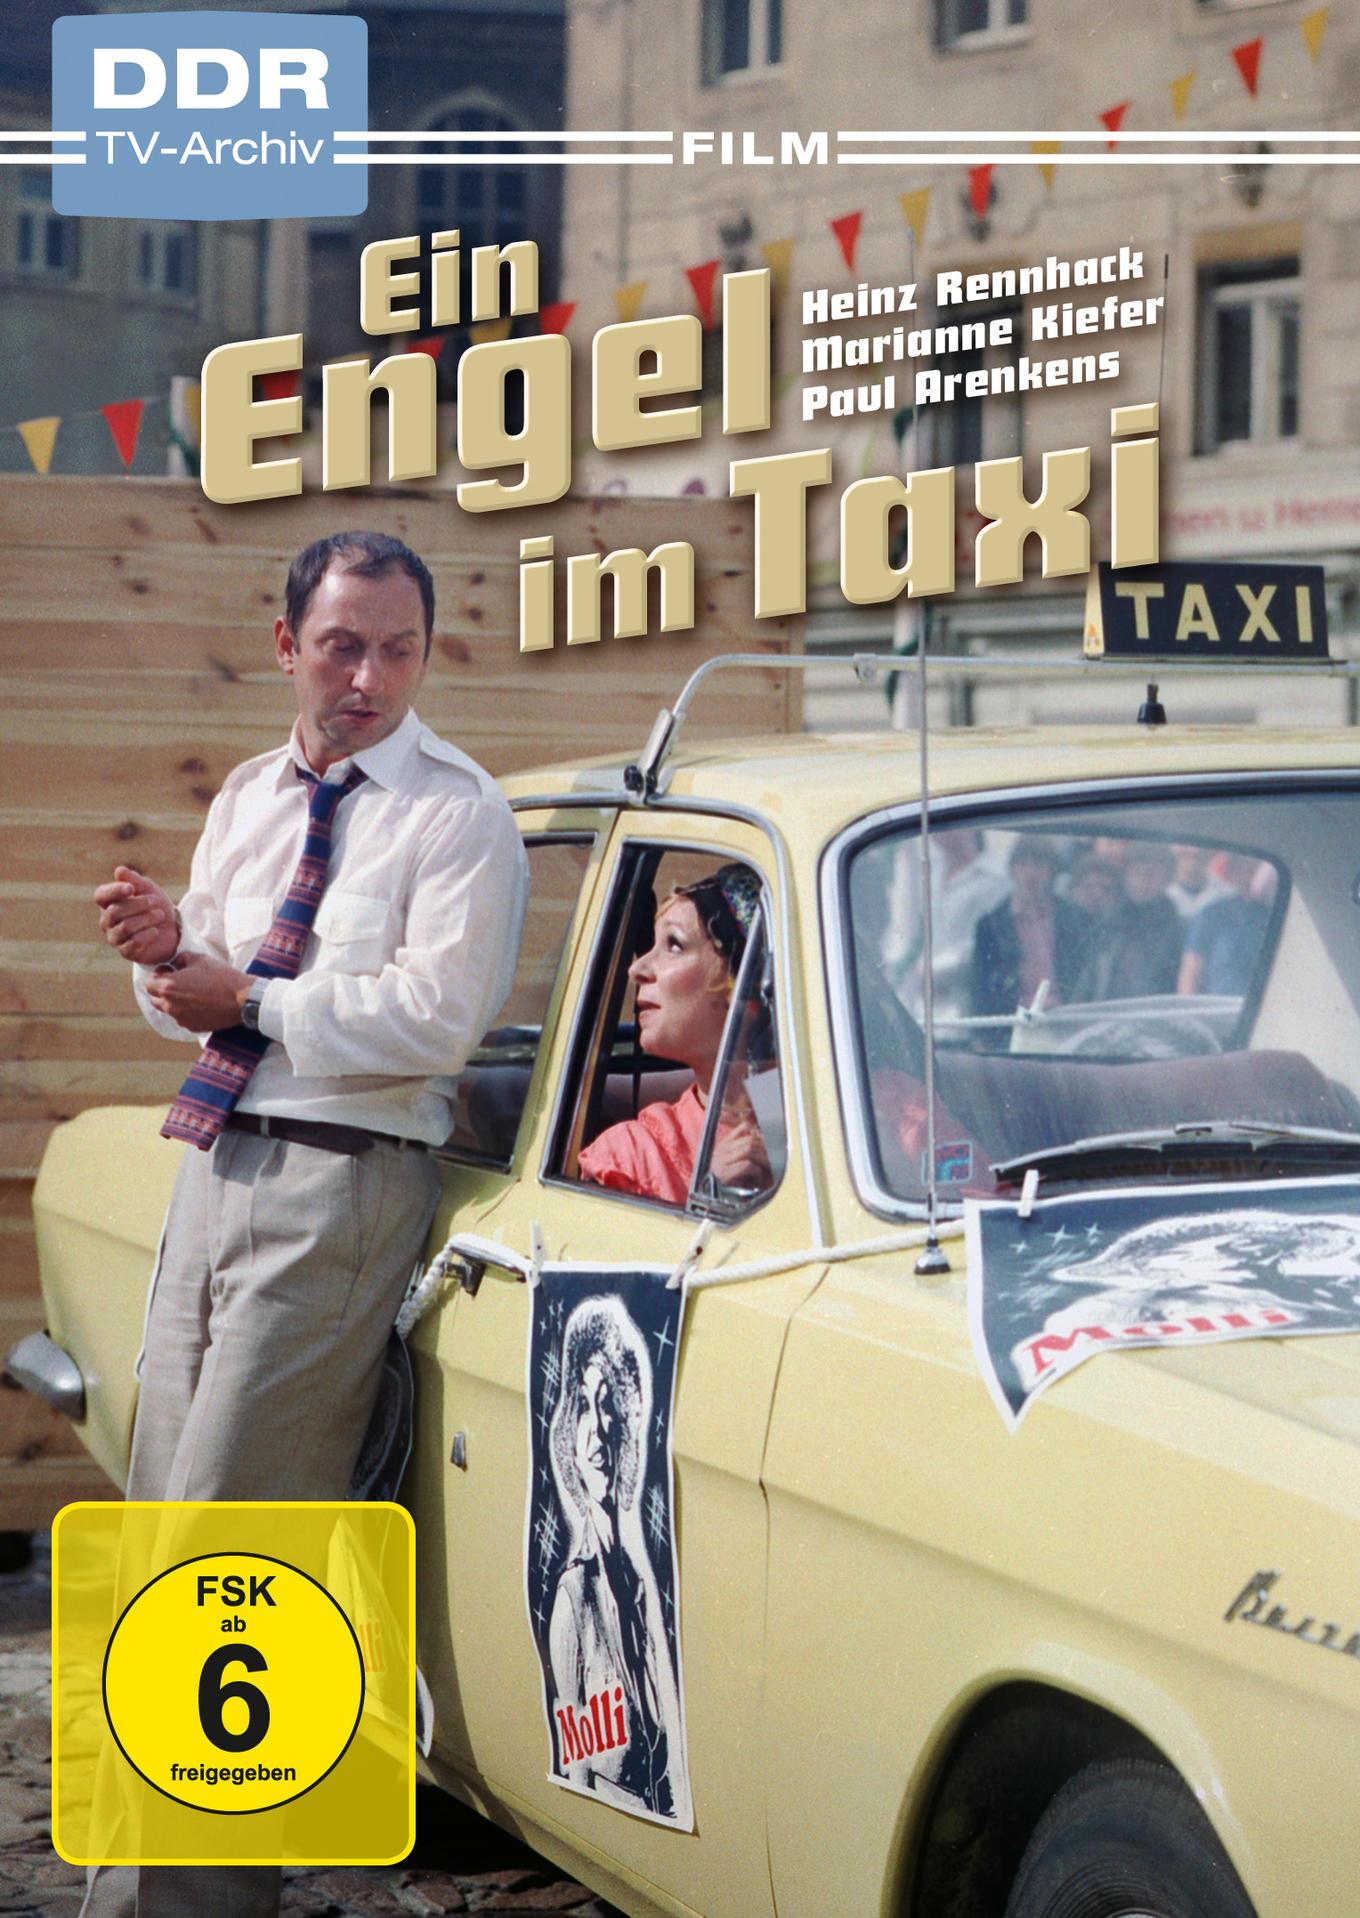 Ein Engel DVD Taxi im